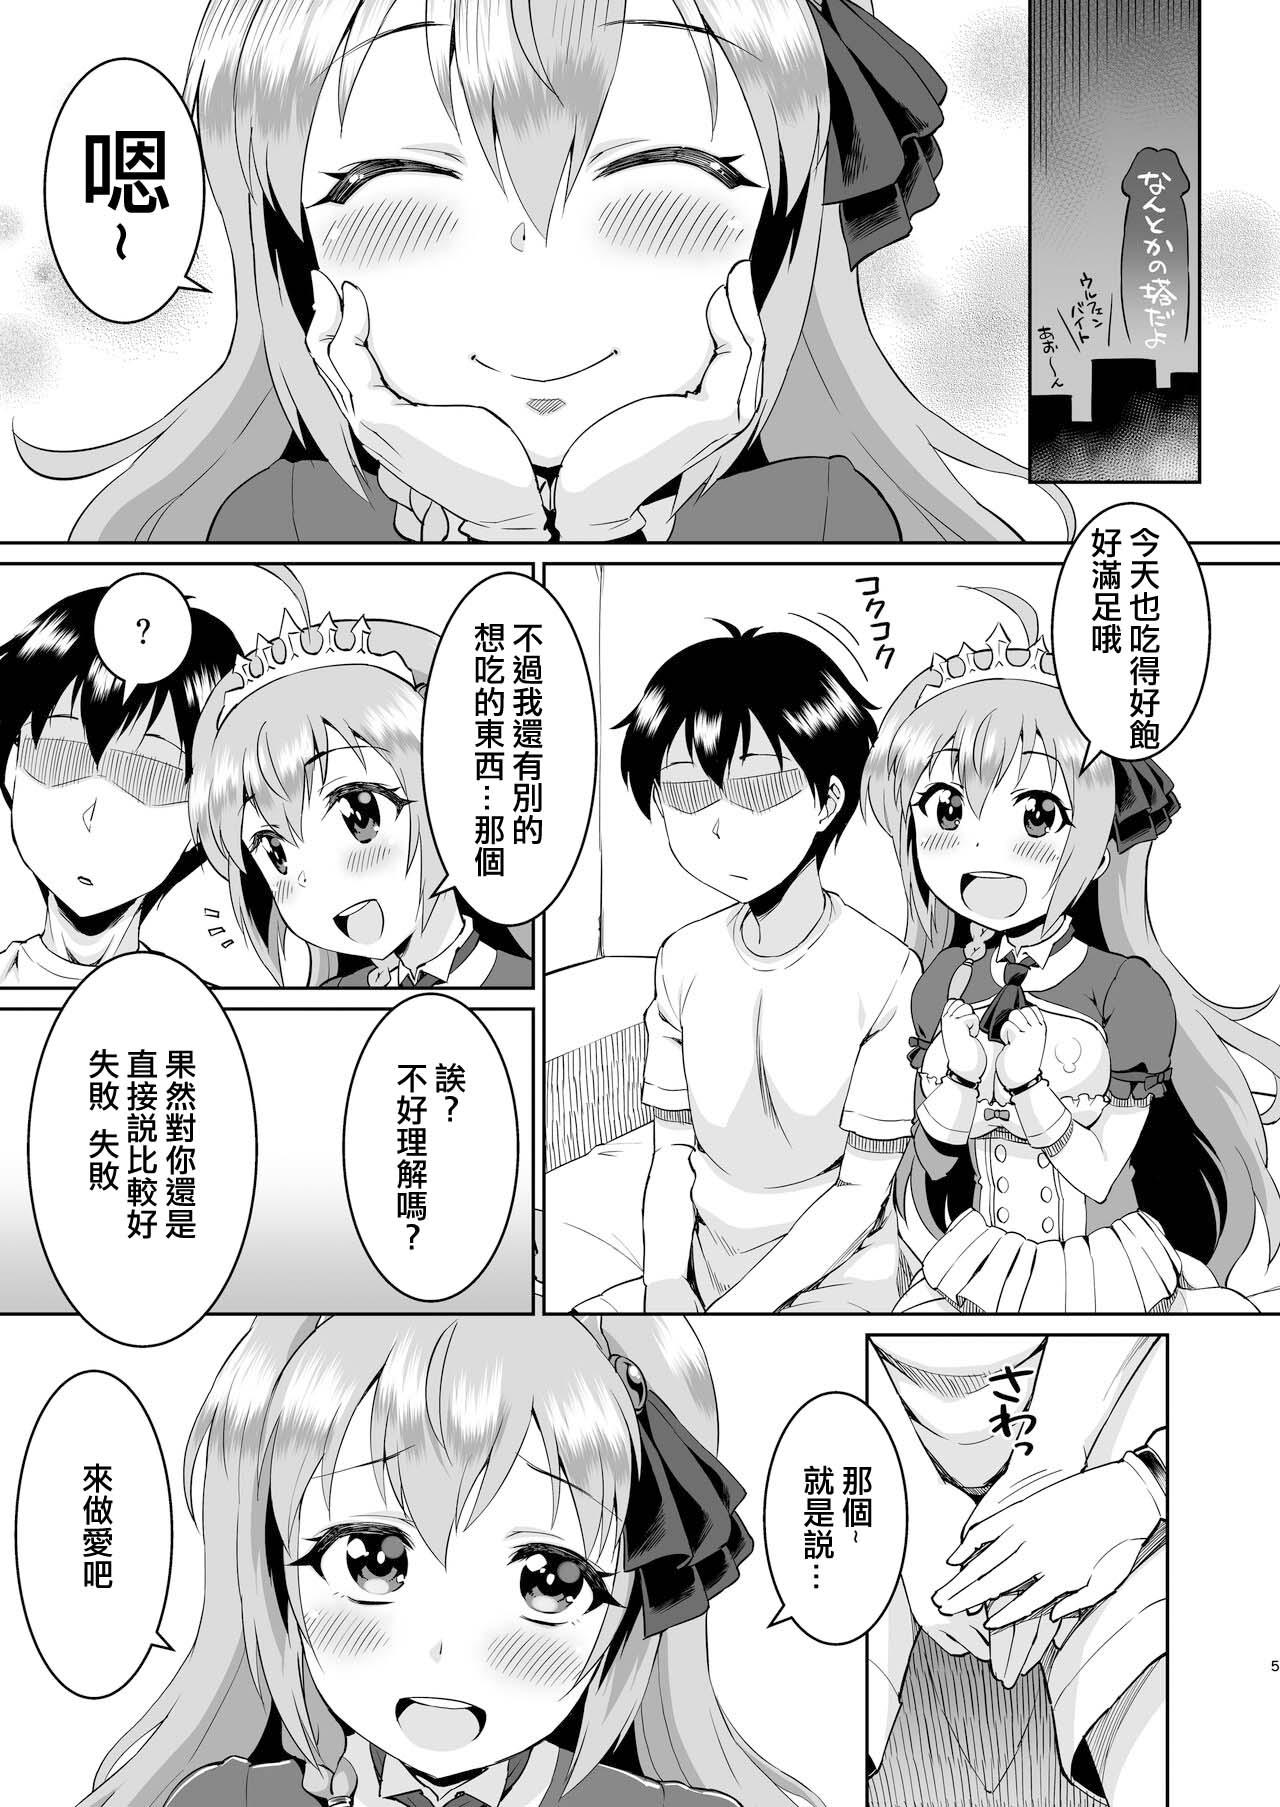 Big Peco-chan Meccha Kawaii yo ne - Princess connect Stretch - Page 4